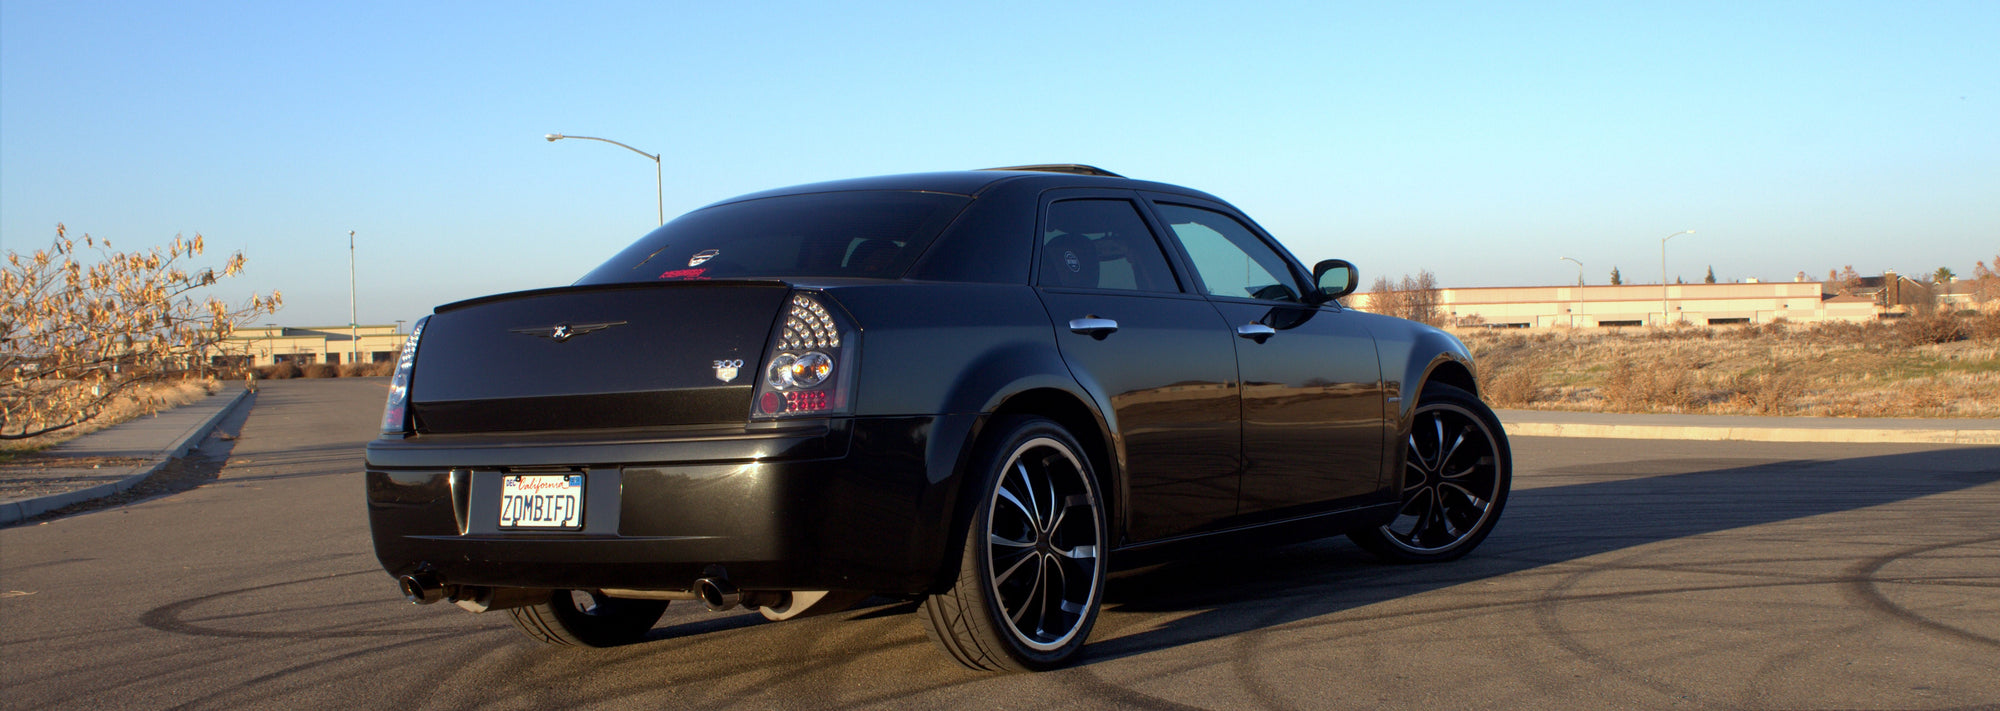 2008 Chrysler 300 6.1L V8